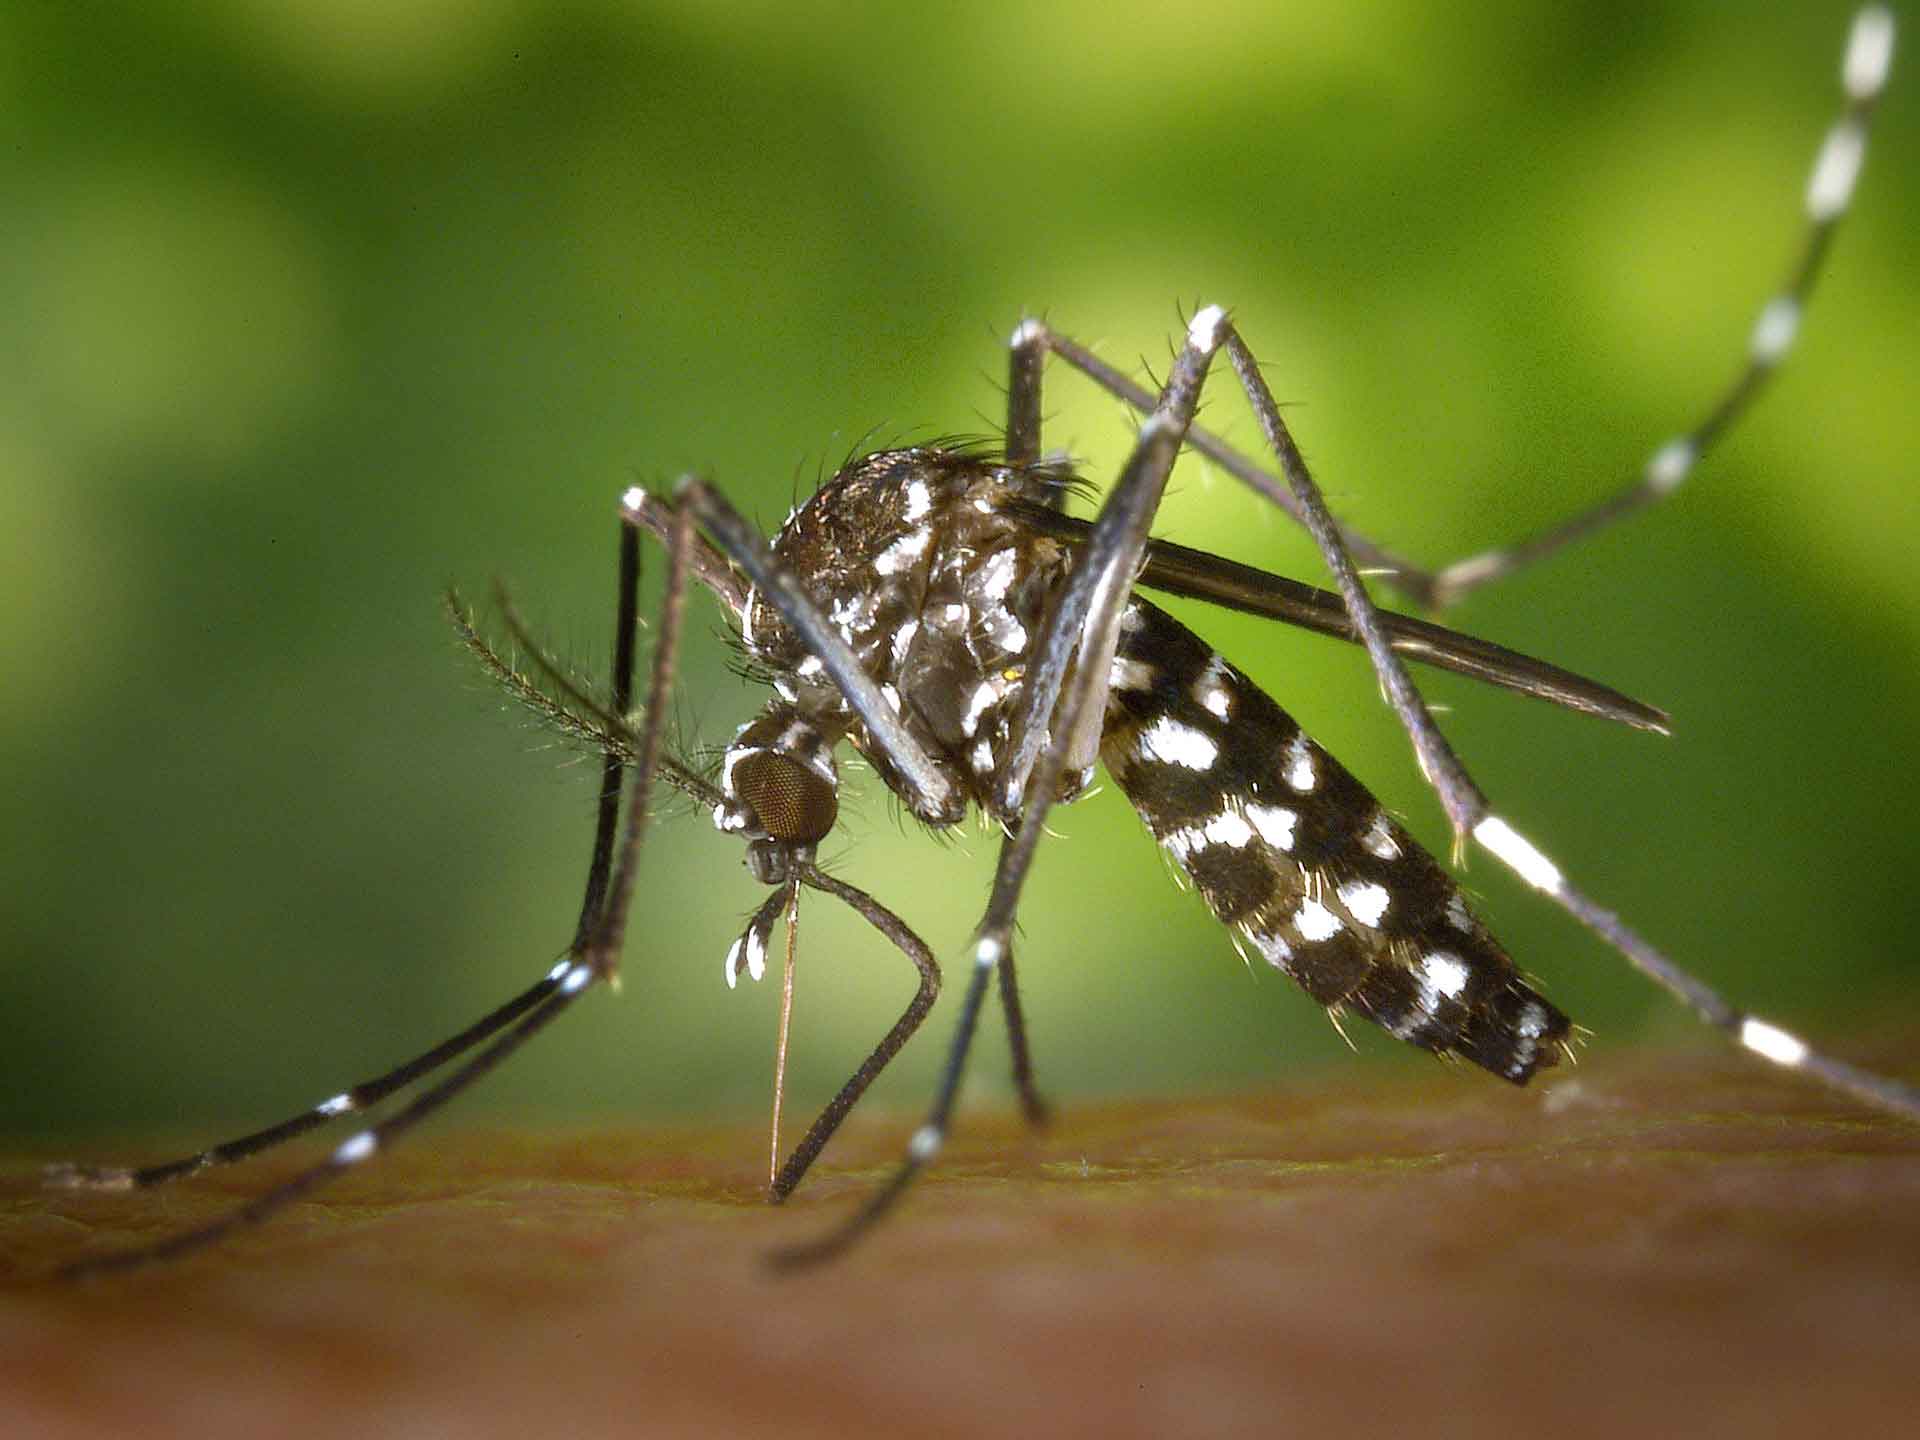 Mosquito-Borne Diseases